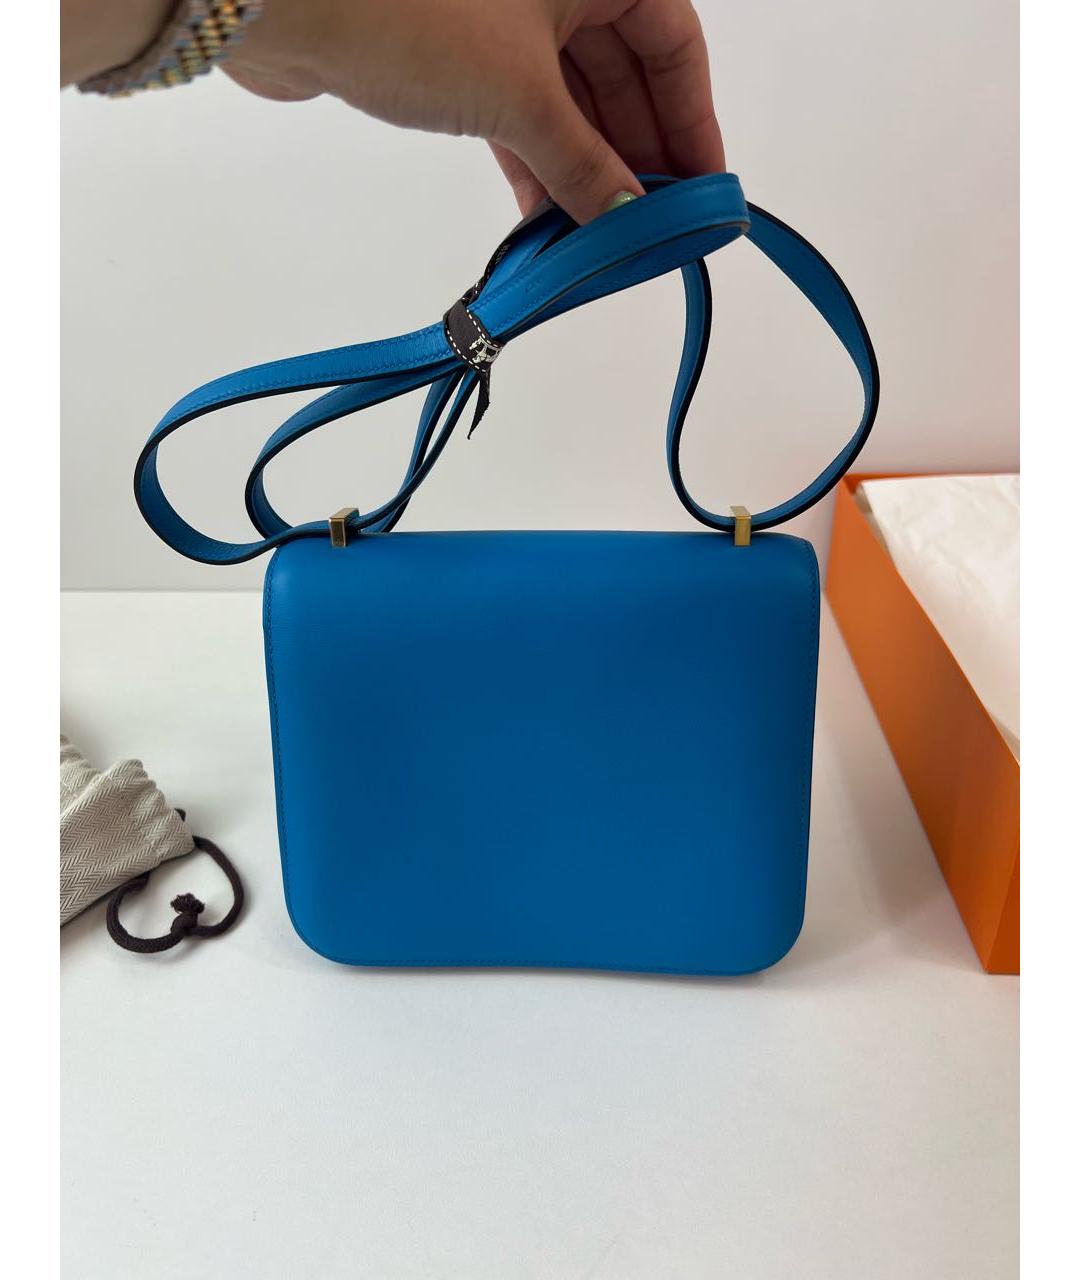 HERMES PRE-OWNED Синяя кожаная сумка через плечо, фото 3